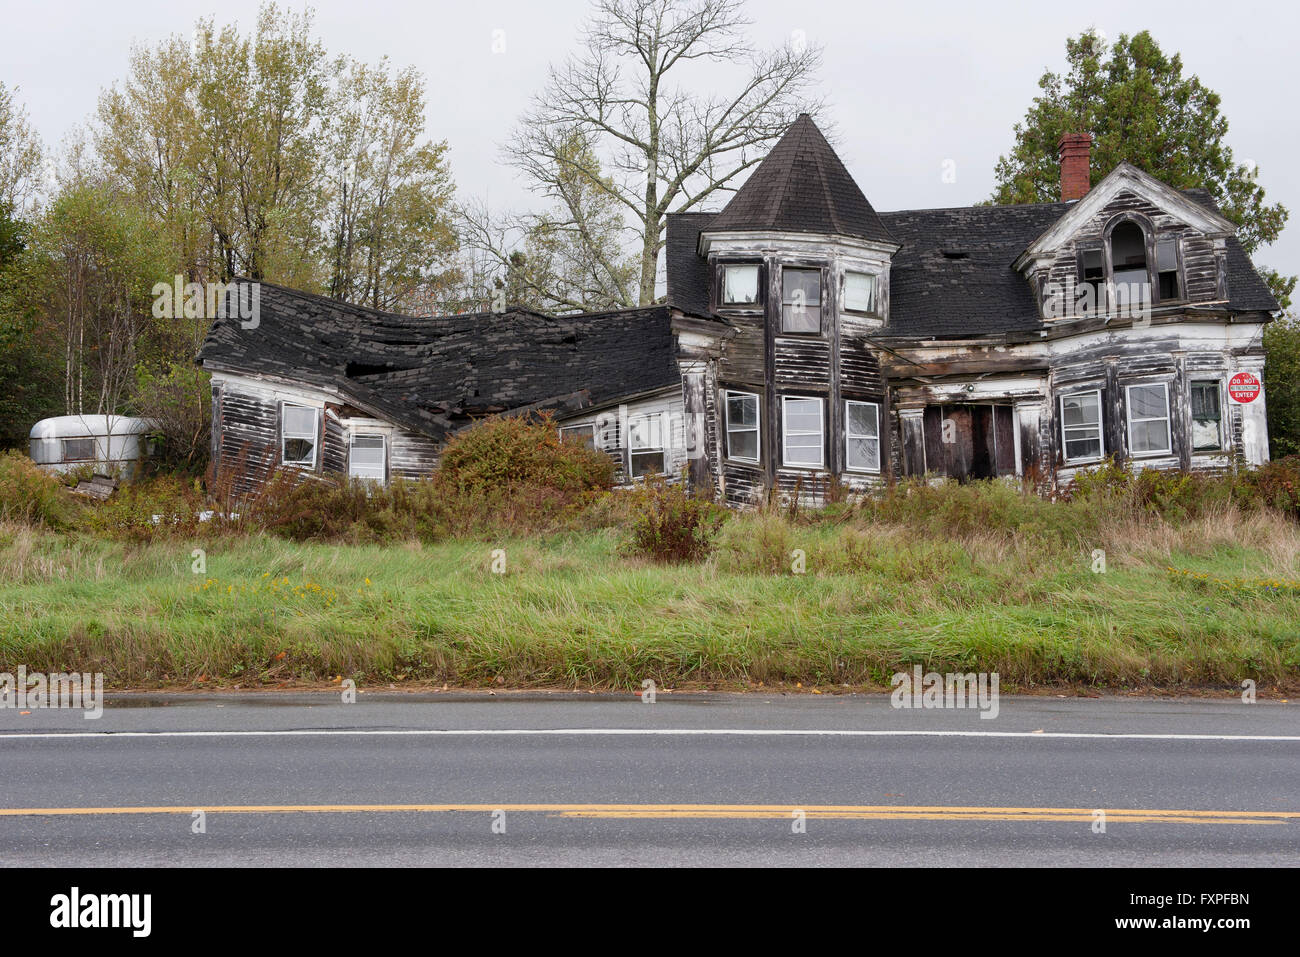 Abandoned, dilapidated house Stock Photo